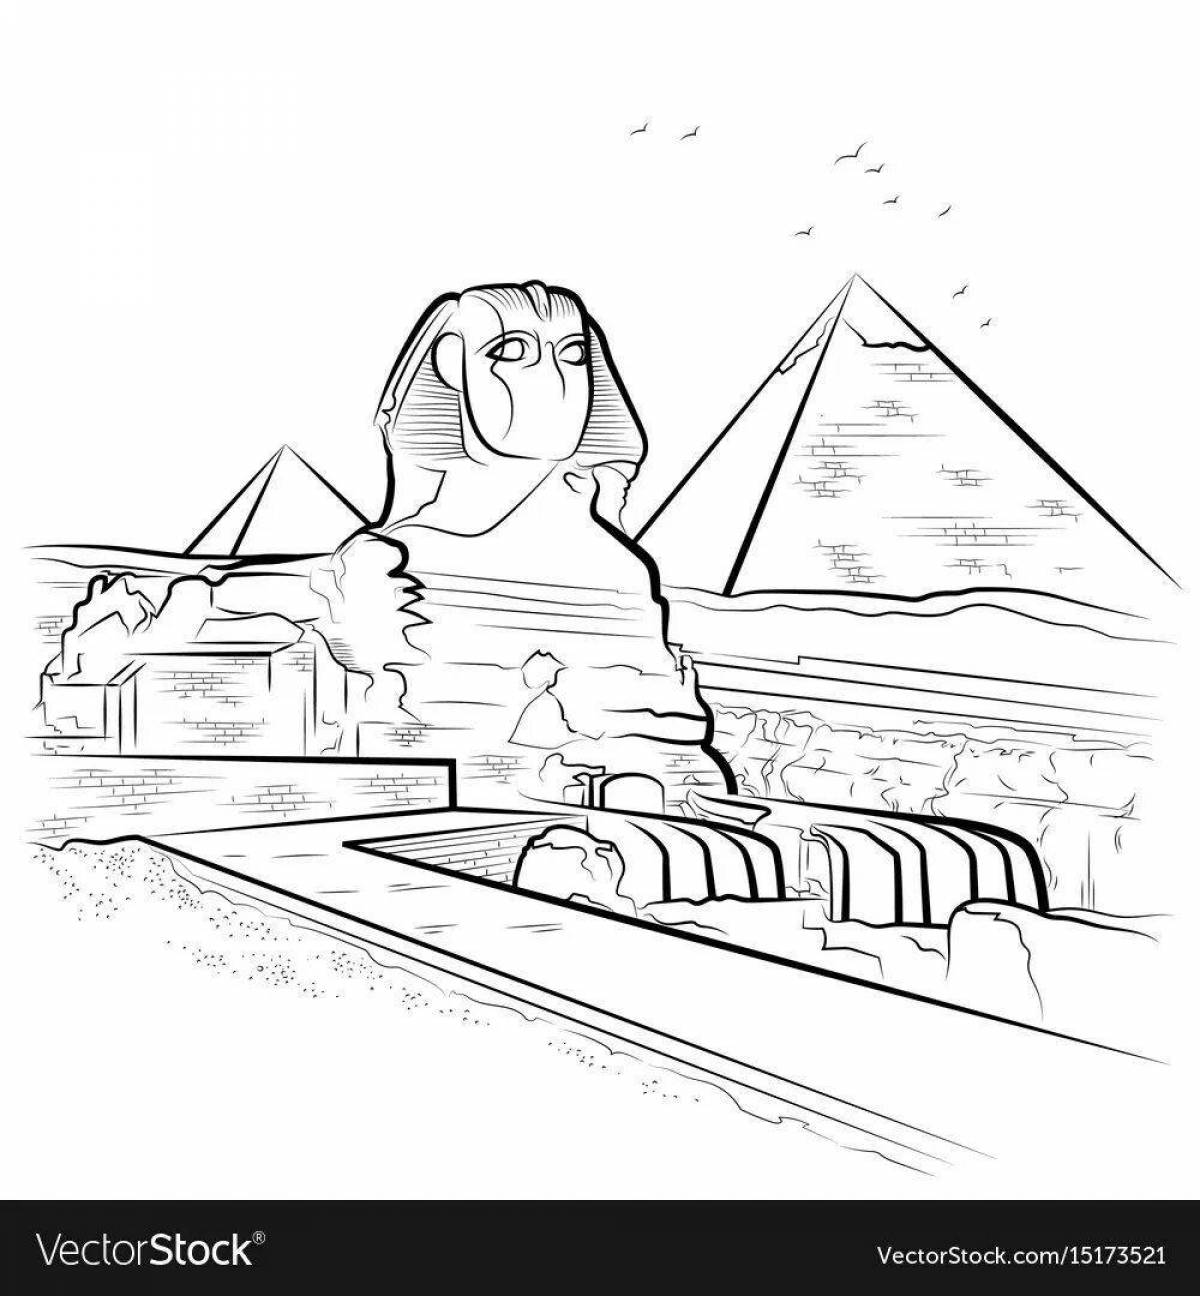 Colouring luxury sphinx egypt